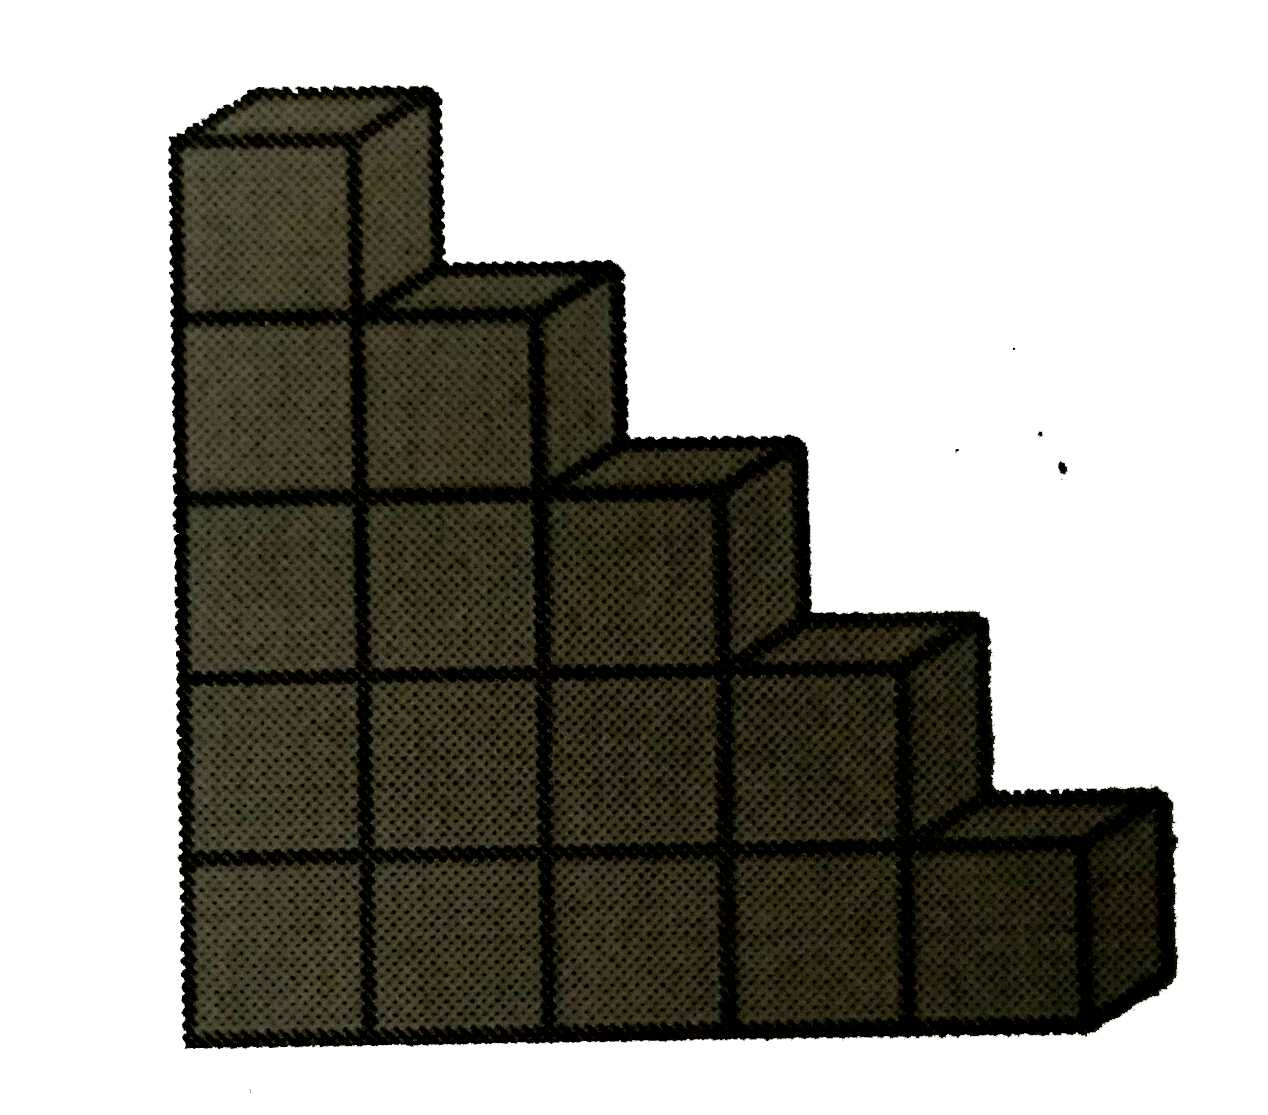 एक बच्चा भवन ब्लॉको से खेल रहा है, जो एक घन के आकार के हैं | उसने इनसे आकृति 13.25 में दर्शाए अनुसार एक ढांचा बना लिया है | प्रत्येक घन का किनारा 3 cm है | उस बच्चे द्वारा बनाए गए ढाँचे का आयतन ज्ञात कीजिए |